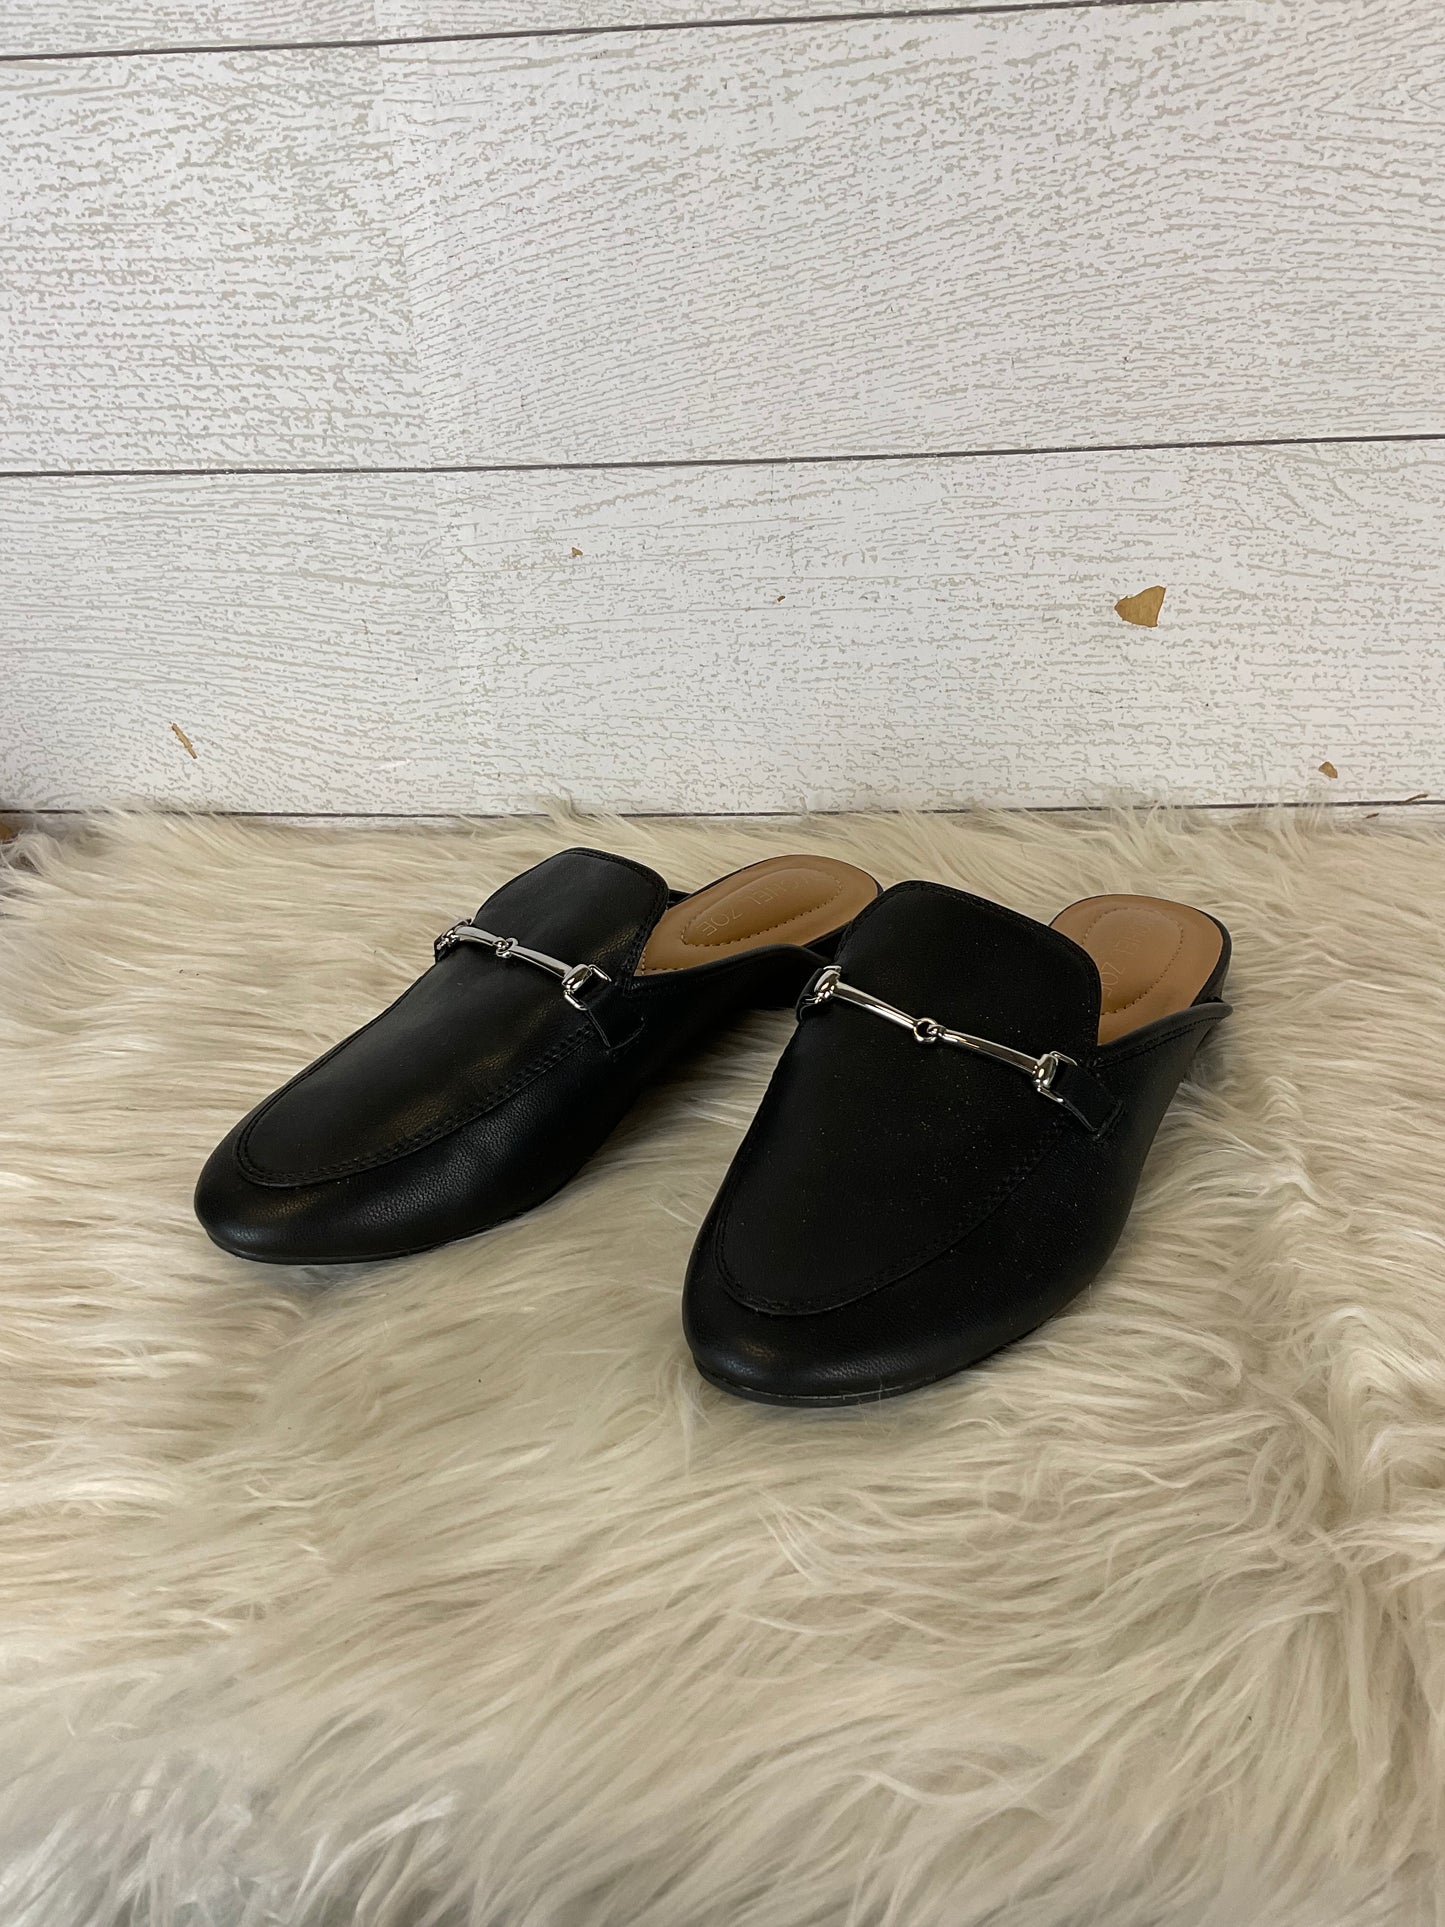 Shoes Flats Mule & Slide By Rachel Zoe  Size: 6.5